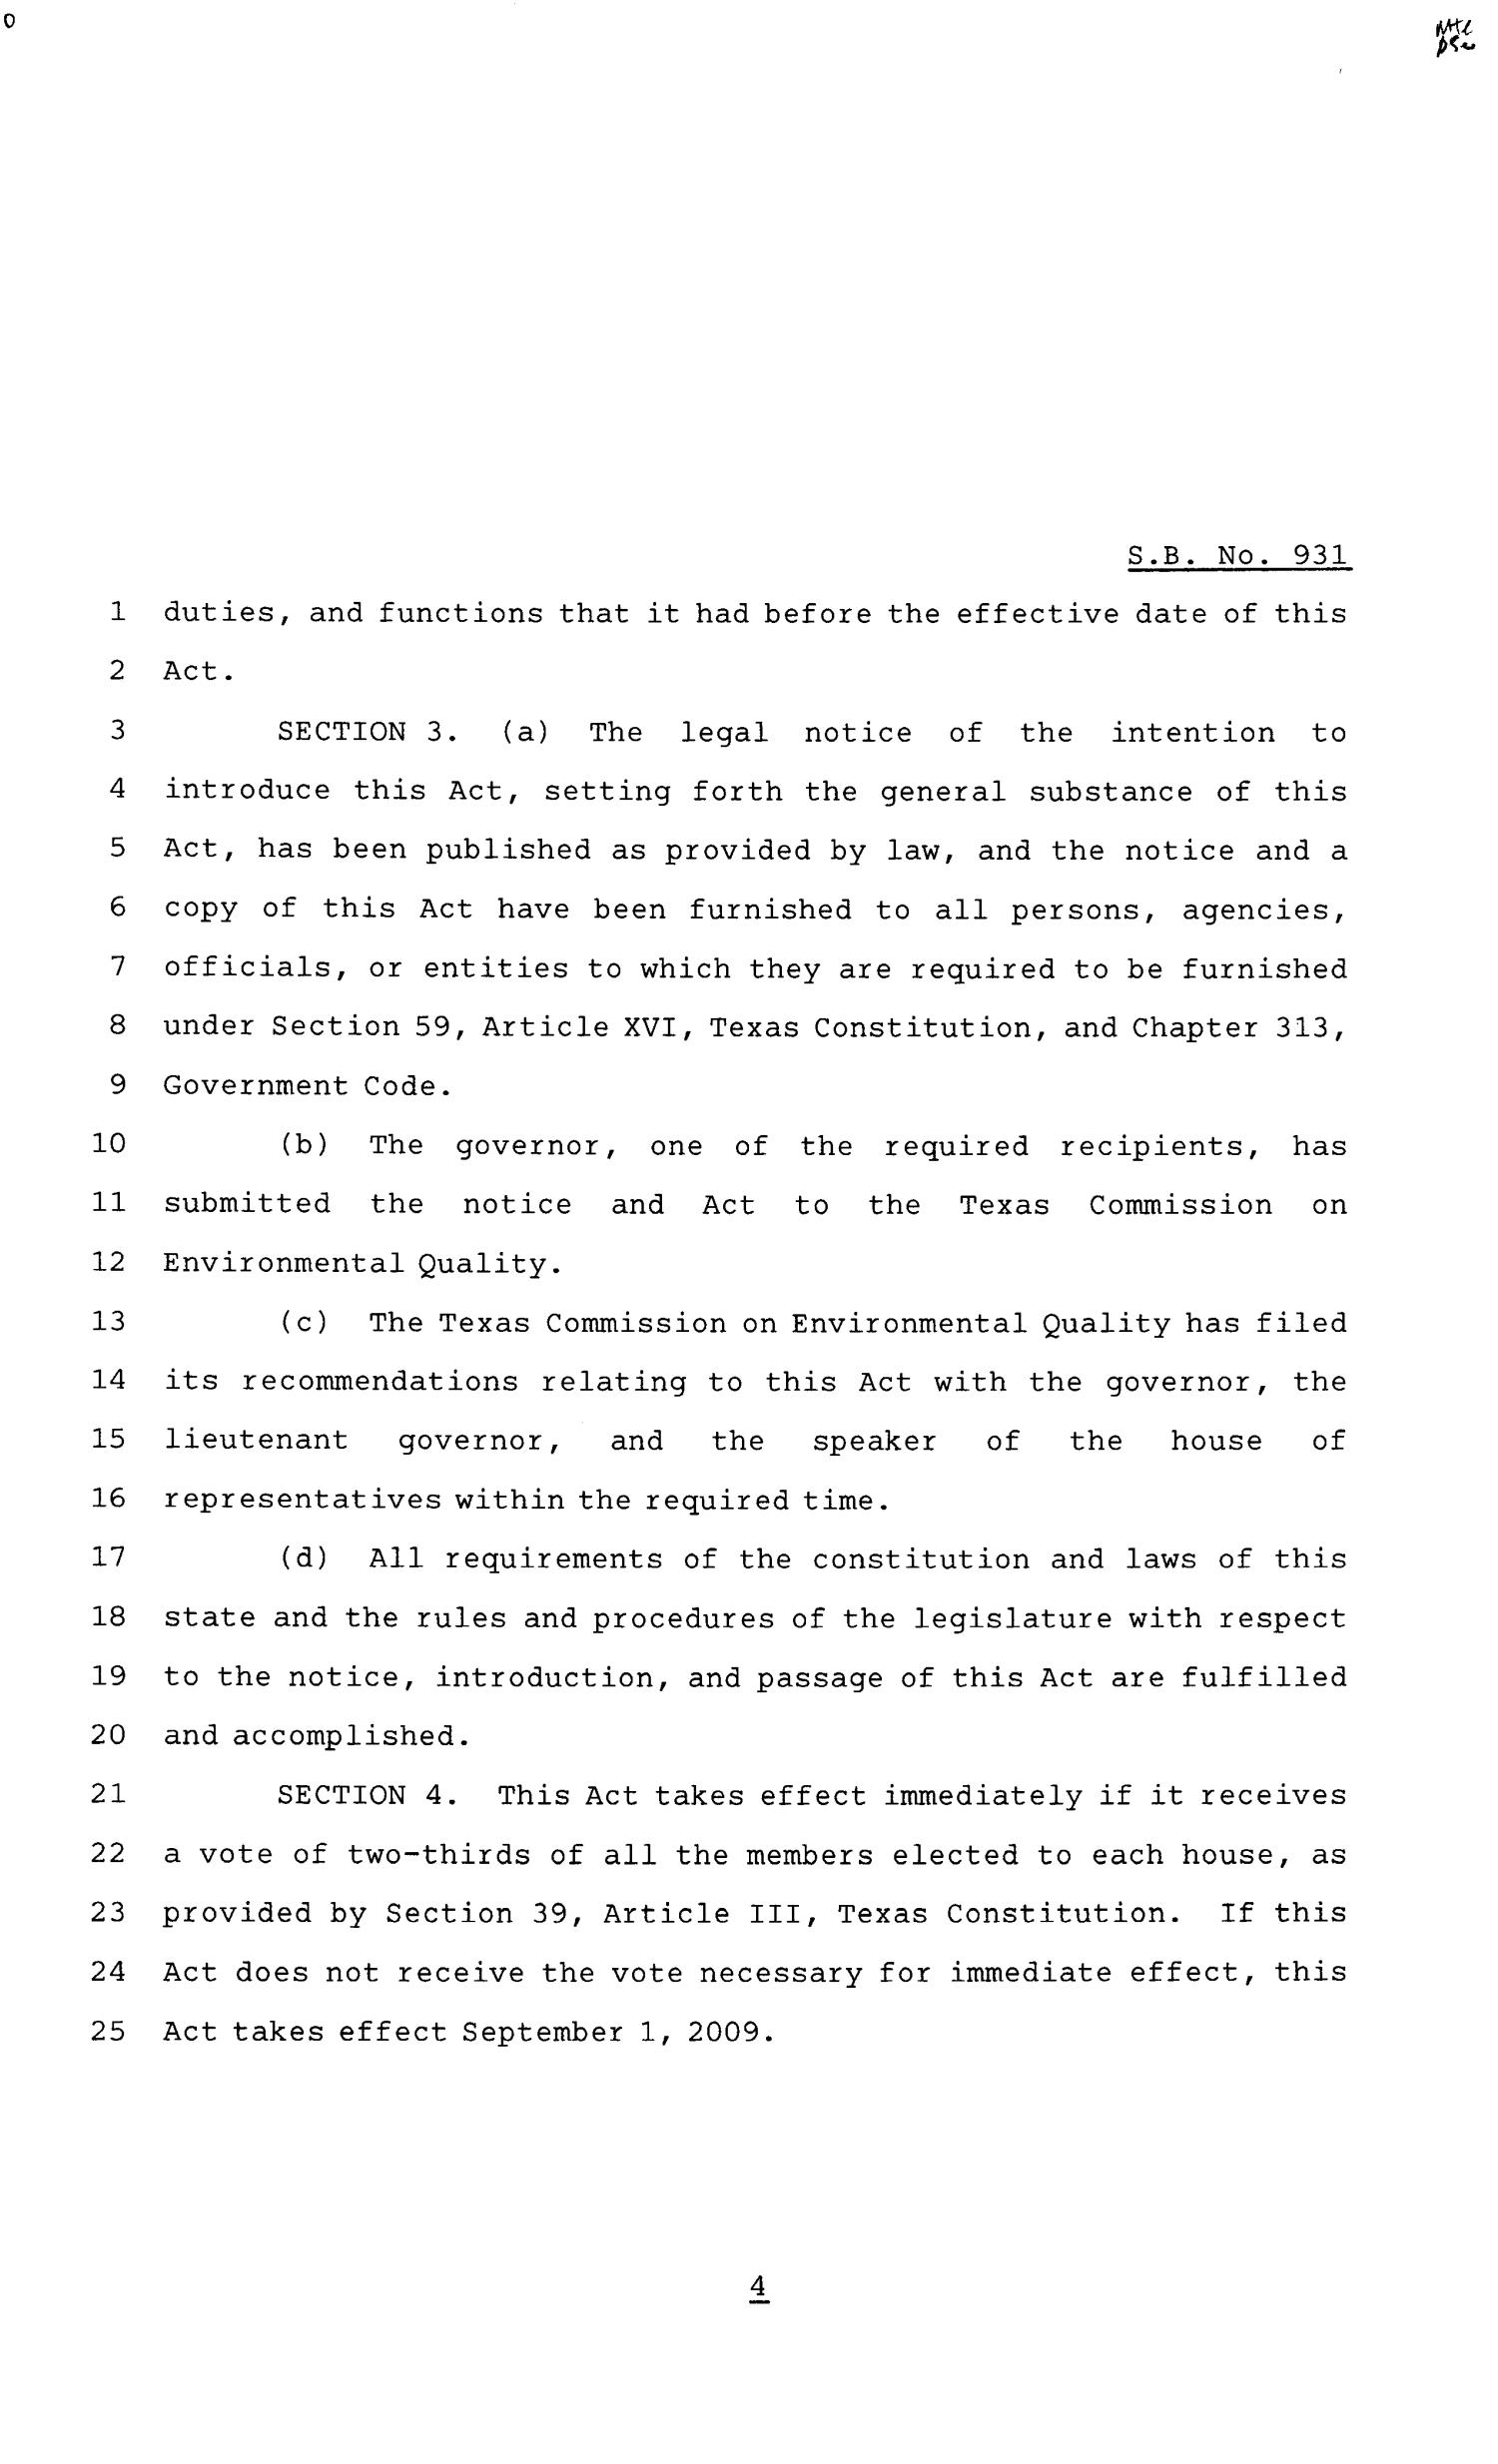 81st Texas Legislature, Senate Bill 931, Chapter 210
                                                
                                                    [Sequence #]: 4 of 5
                                                